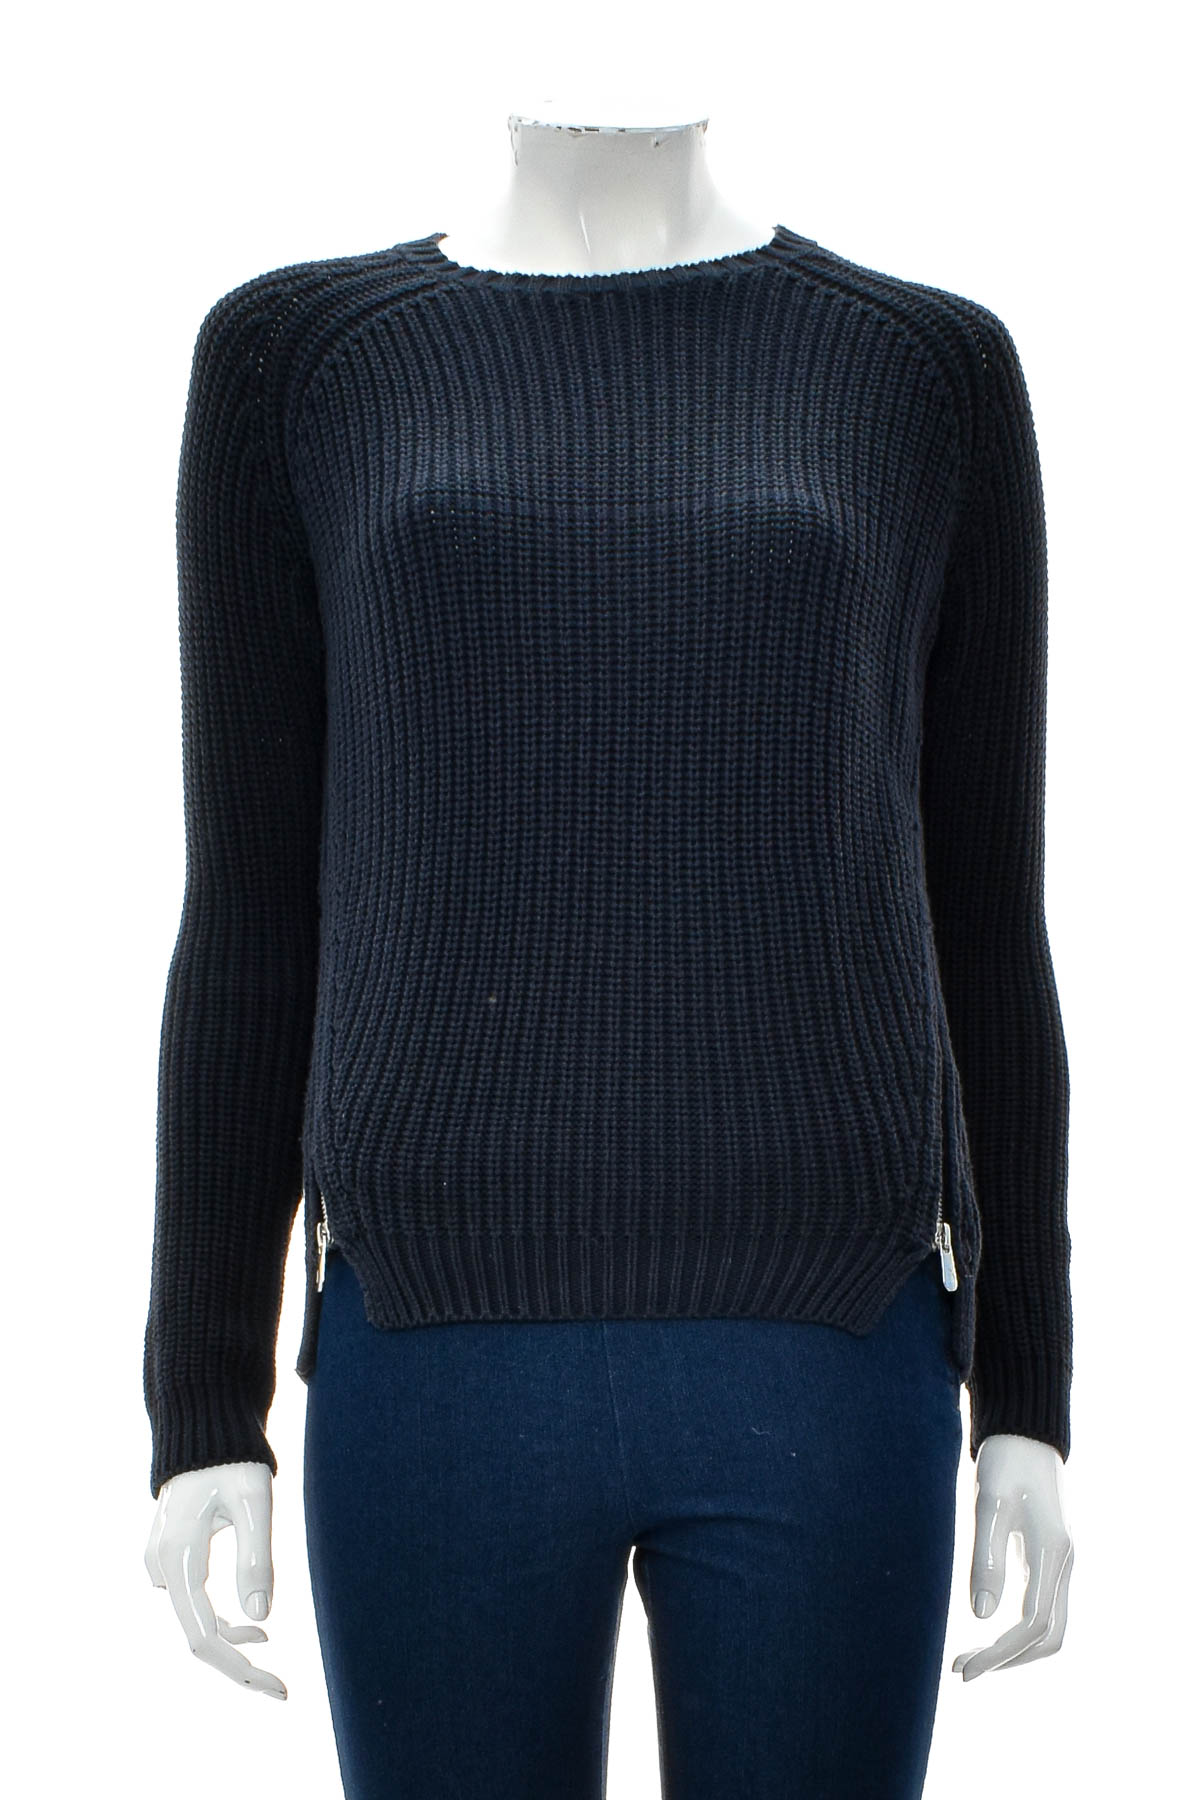 Women's sweater - Blue Motion - 0